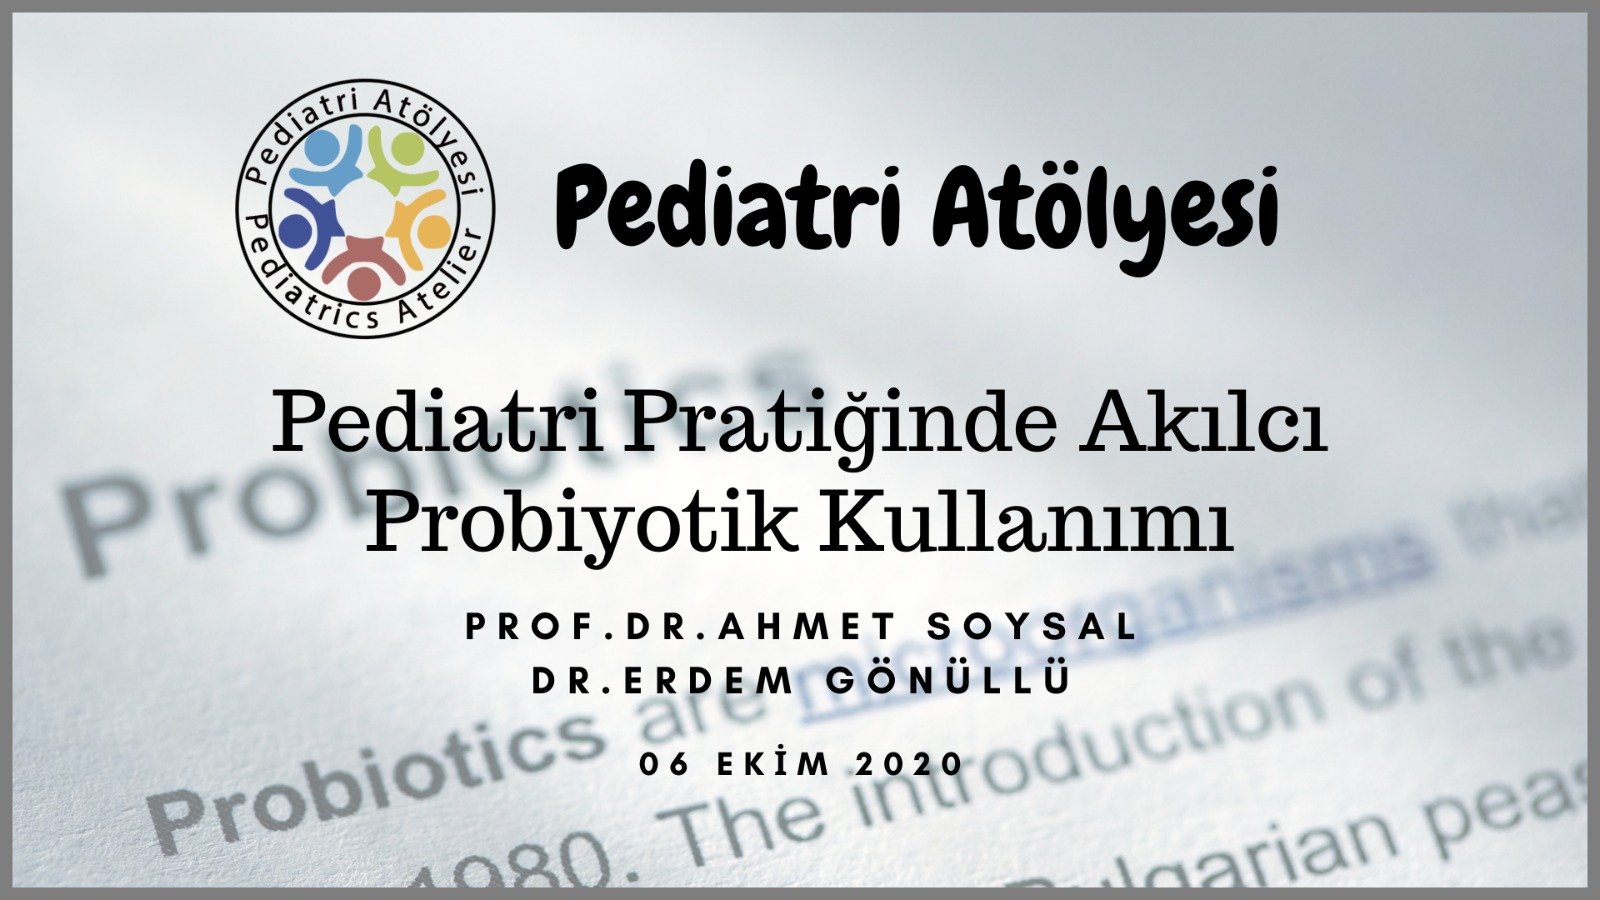 Pediatri Pratiğinde Akılcı Probiyotik Kullanımı